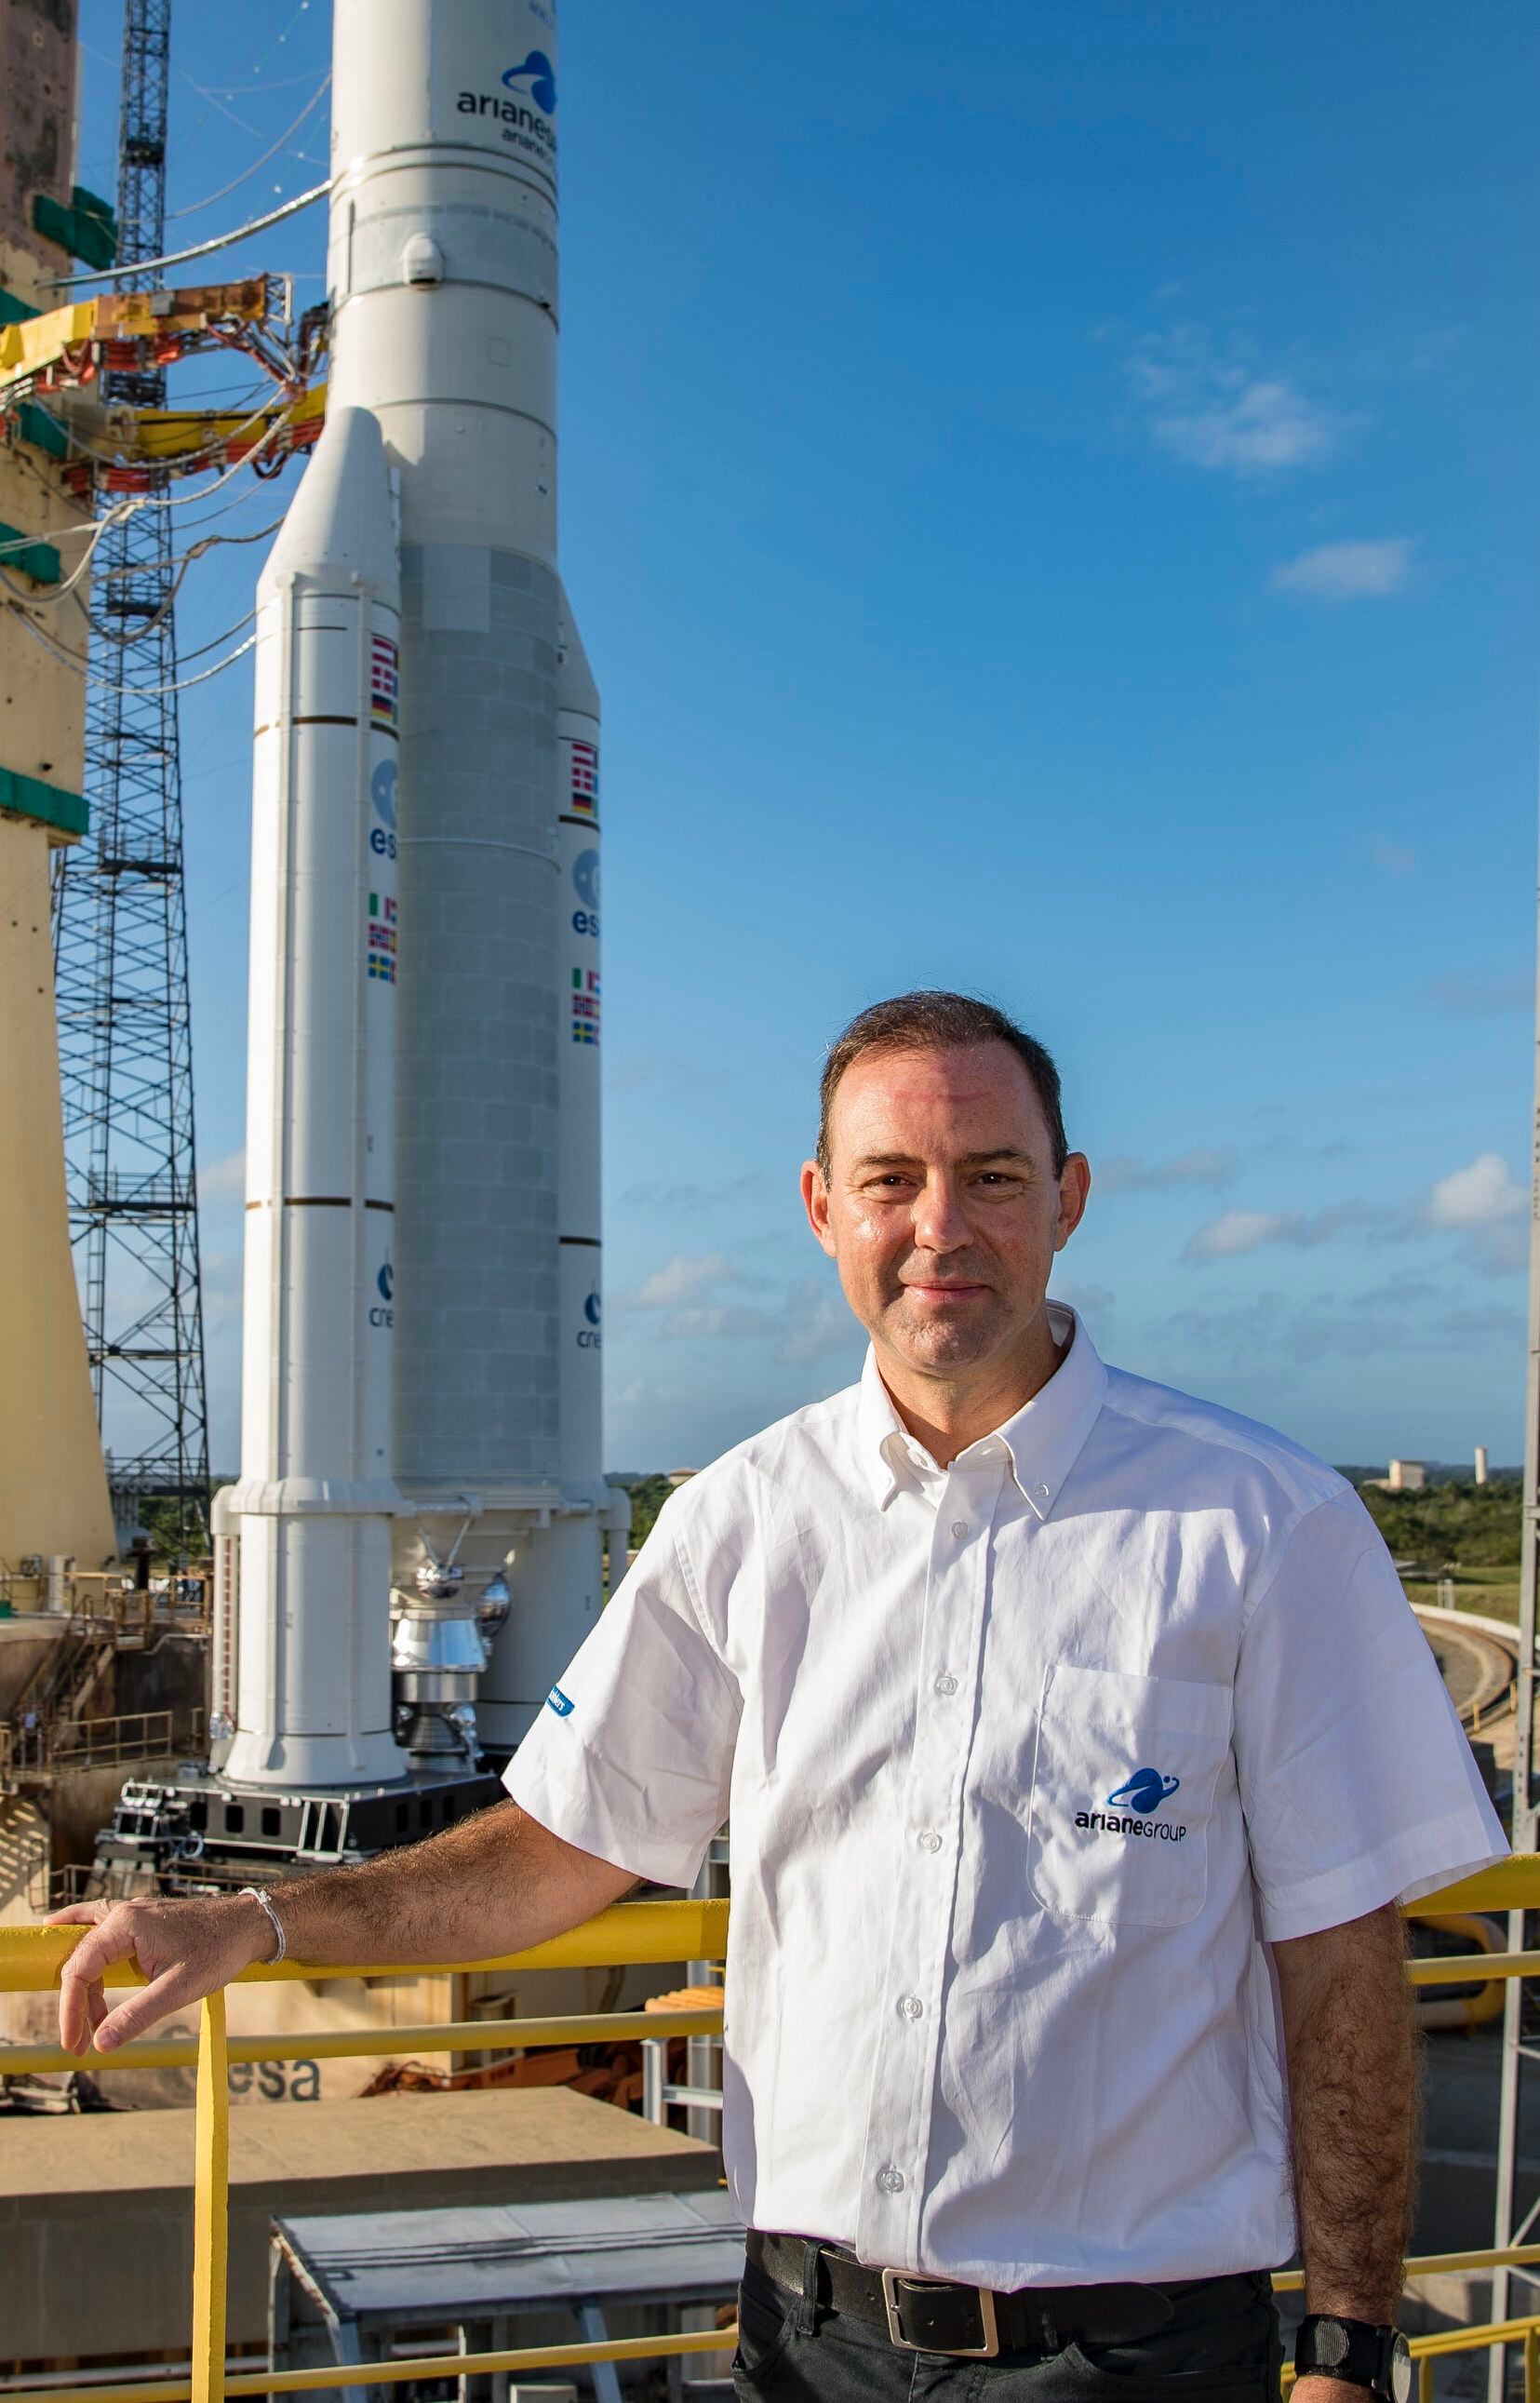 El consejero delegado del grupo Ariane, André-Hubert Roussel, antes del lanzamiento de un cohete Ariane 5 desde el puerto espacial de Kourou en Guayana Francesa.